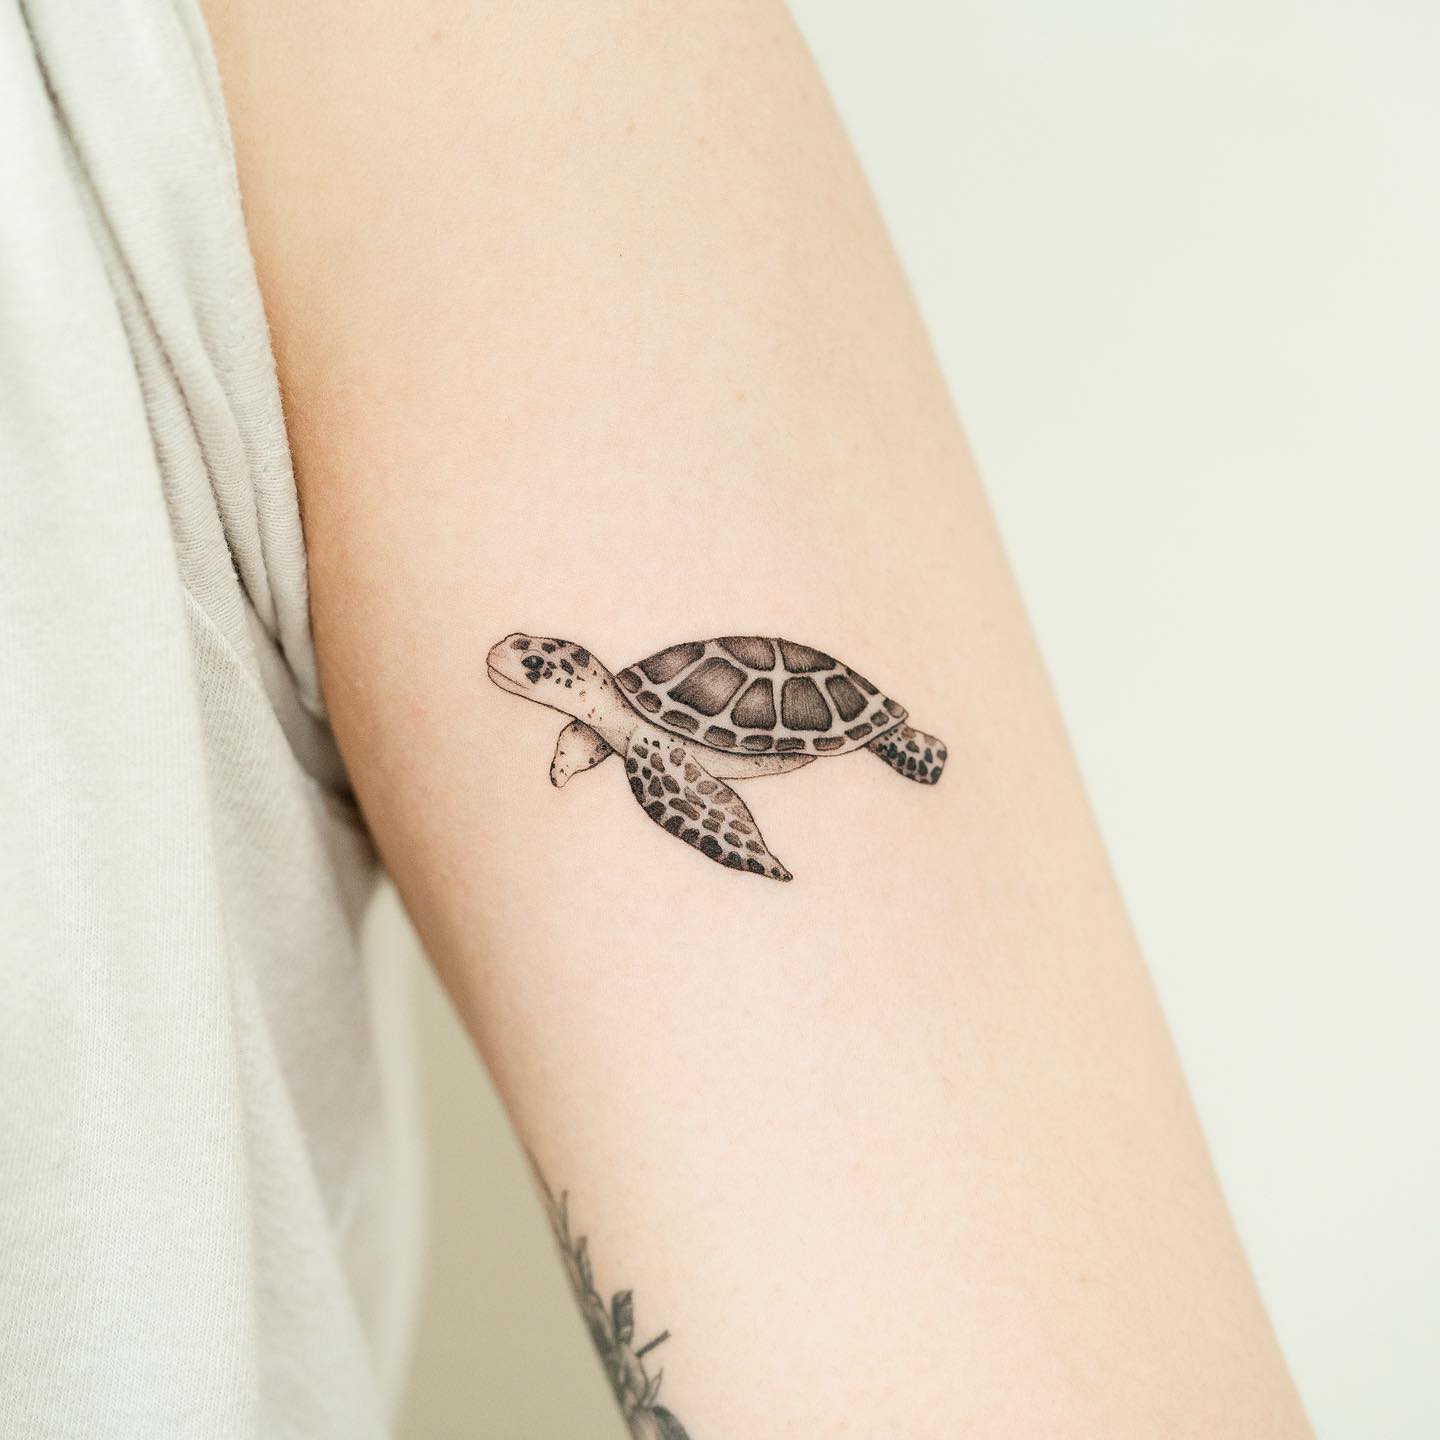 Sea turtle tattoo on the upper arm